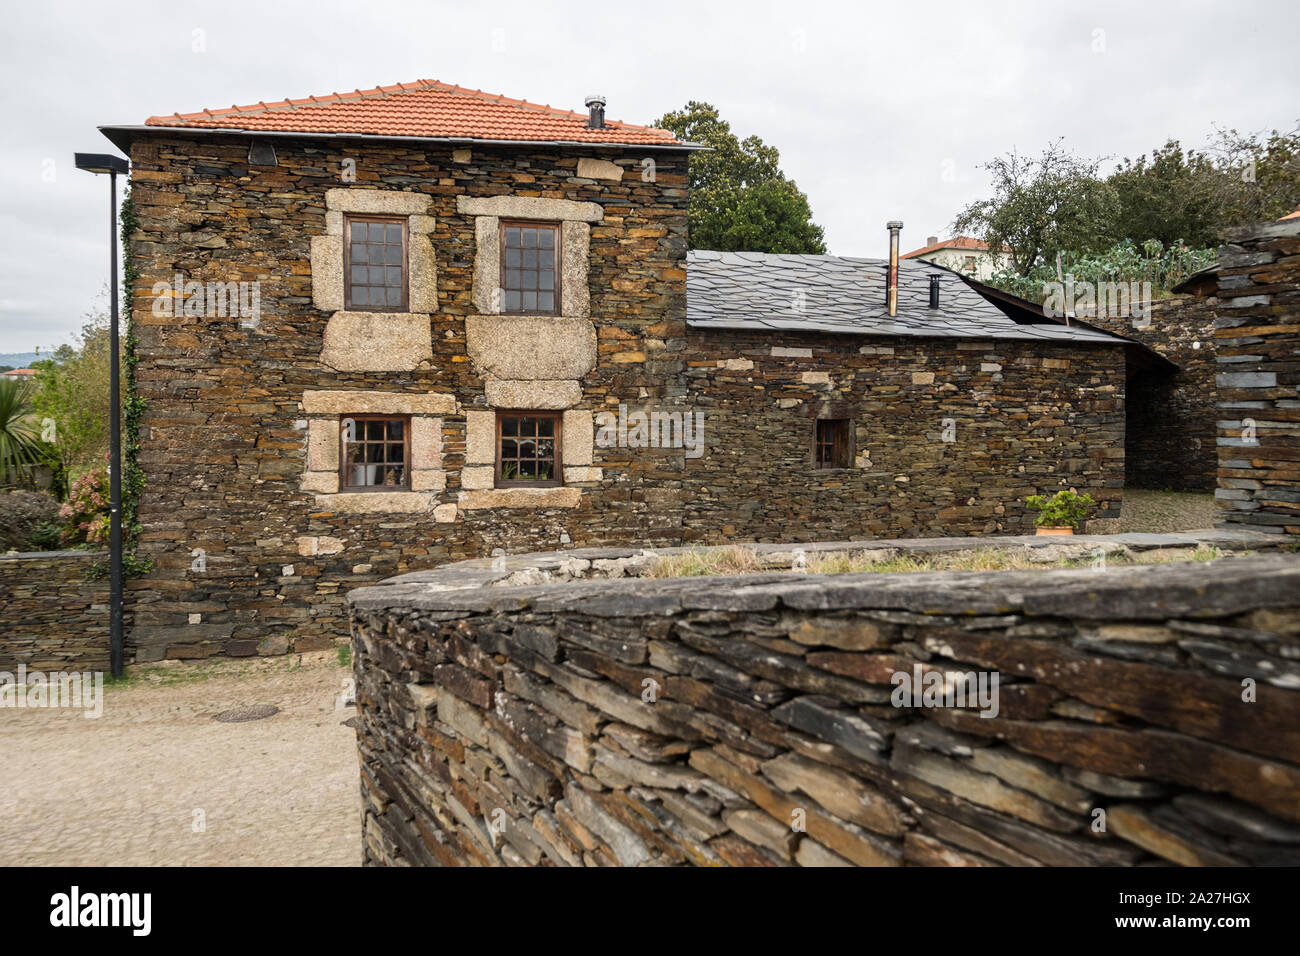 Lisboa, Portugal - 29. September 2019: Quintandona, ein portugiesisches Dorf einzigartige Architektur und seinen Gebäuden in Schiefer, Granit und Schiefer Ston Stockfoto